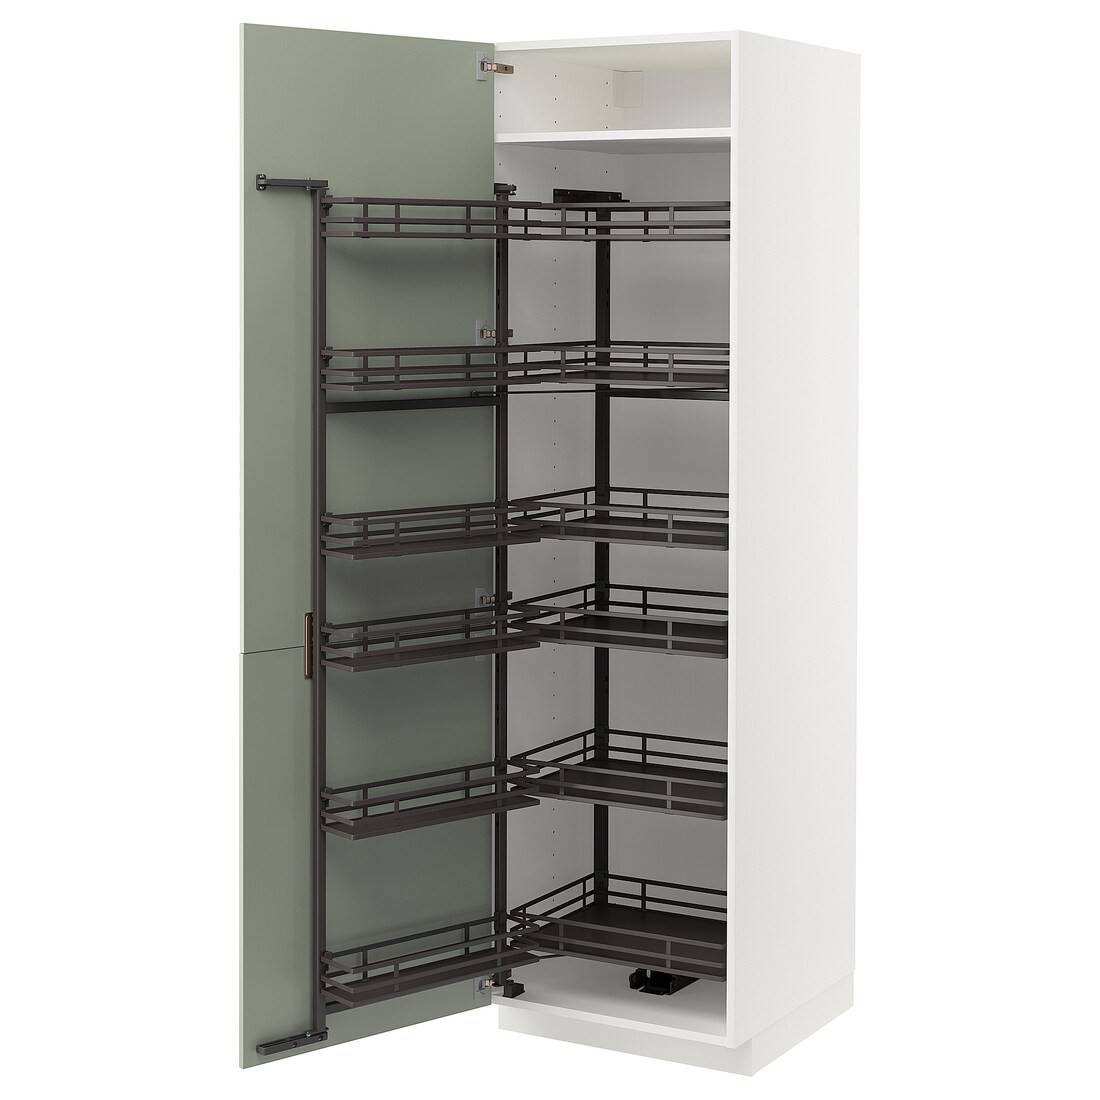 METOD МЕТОД Высокий шкаф с выдвижной кладовой, белый / Stensund светло-зеленый, 60x60x200 см